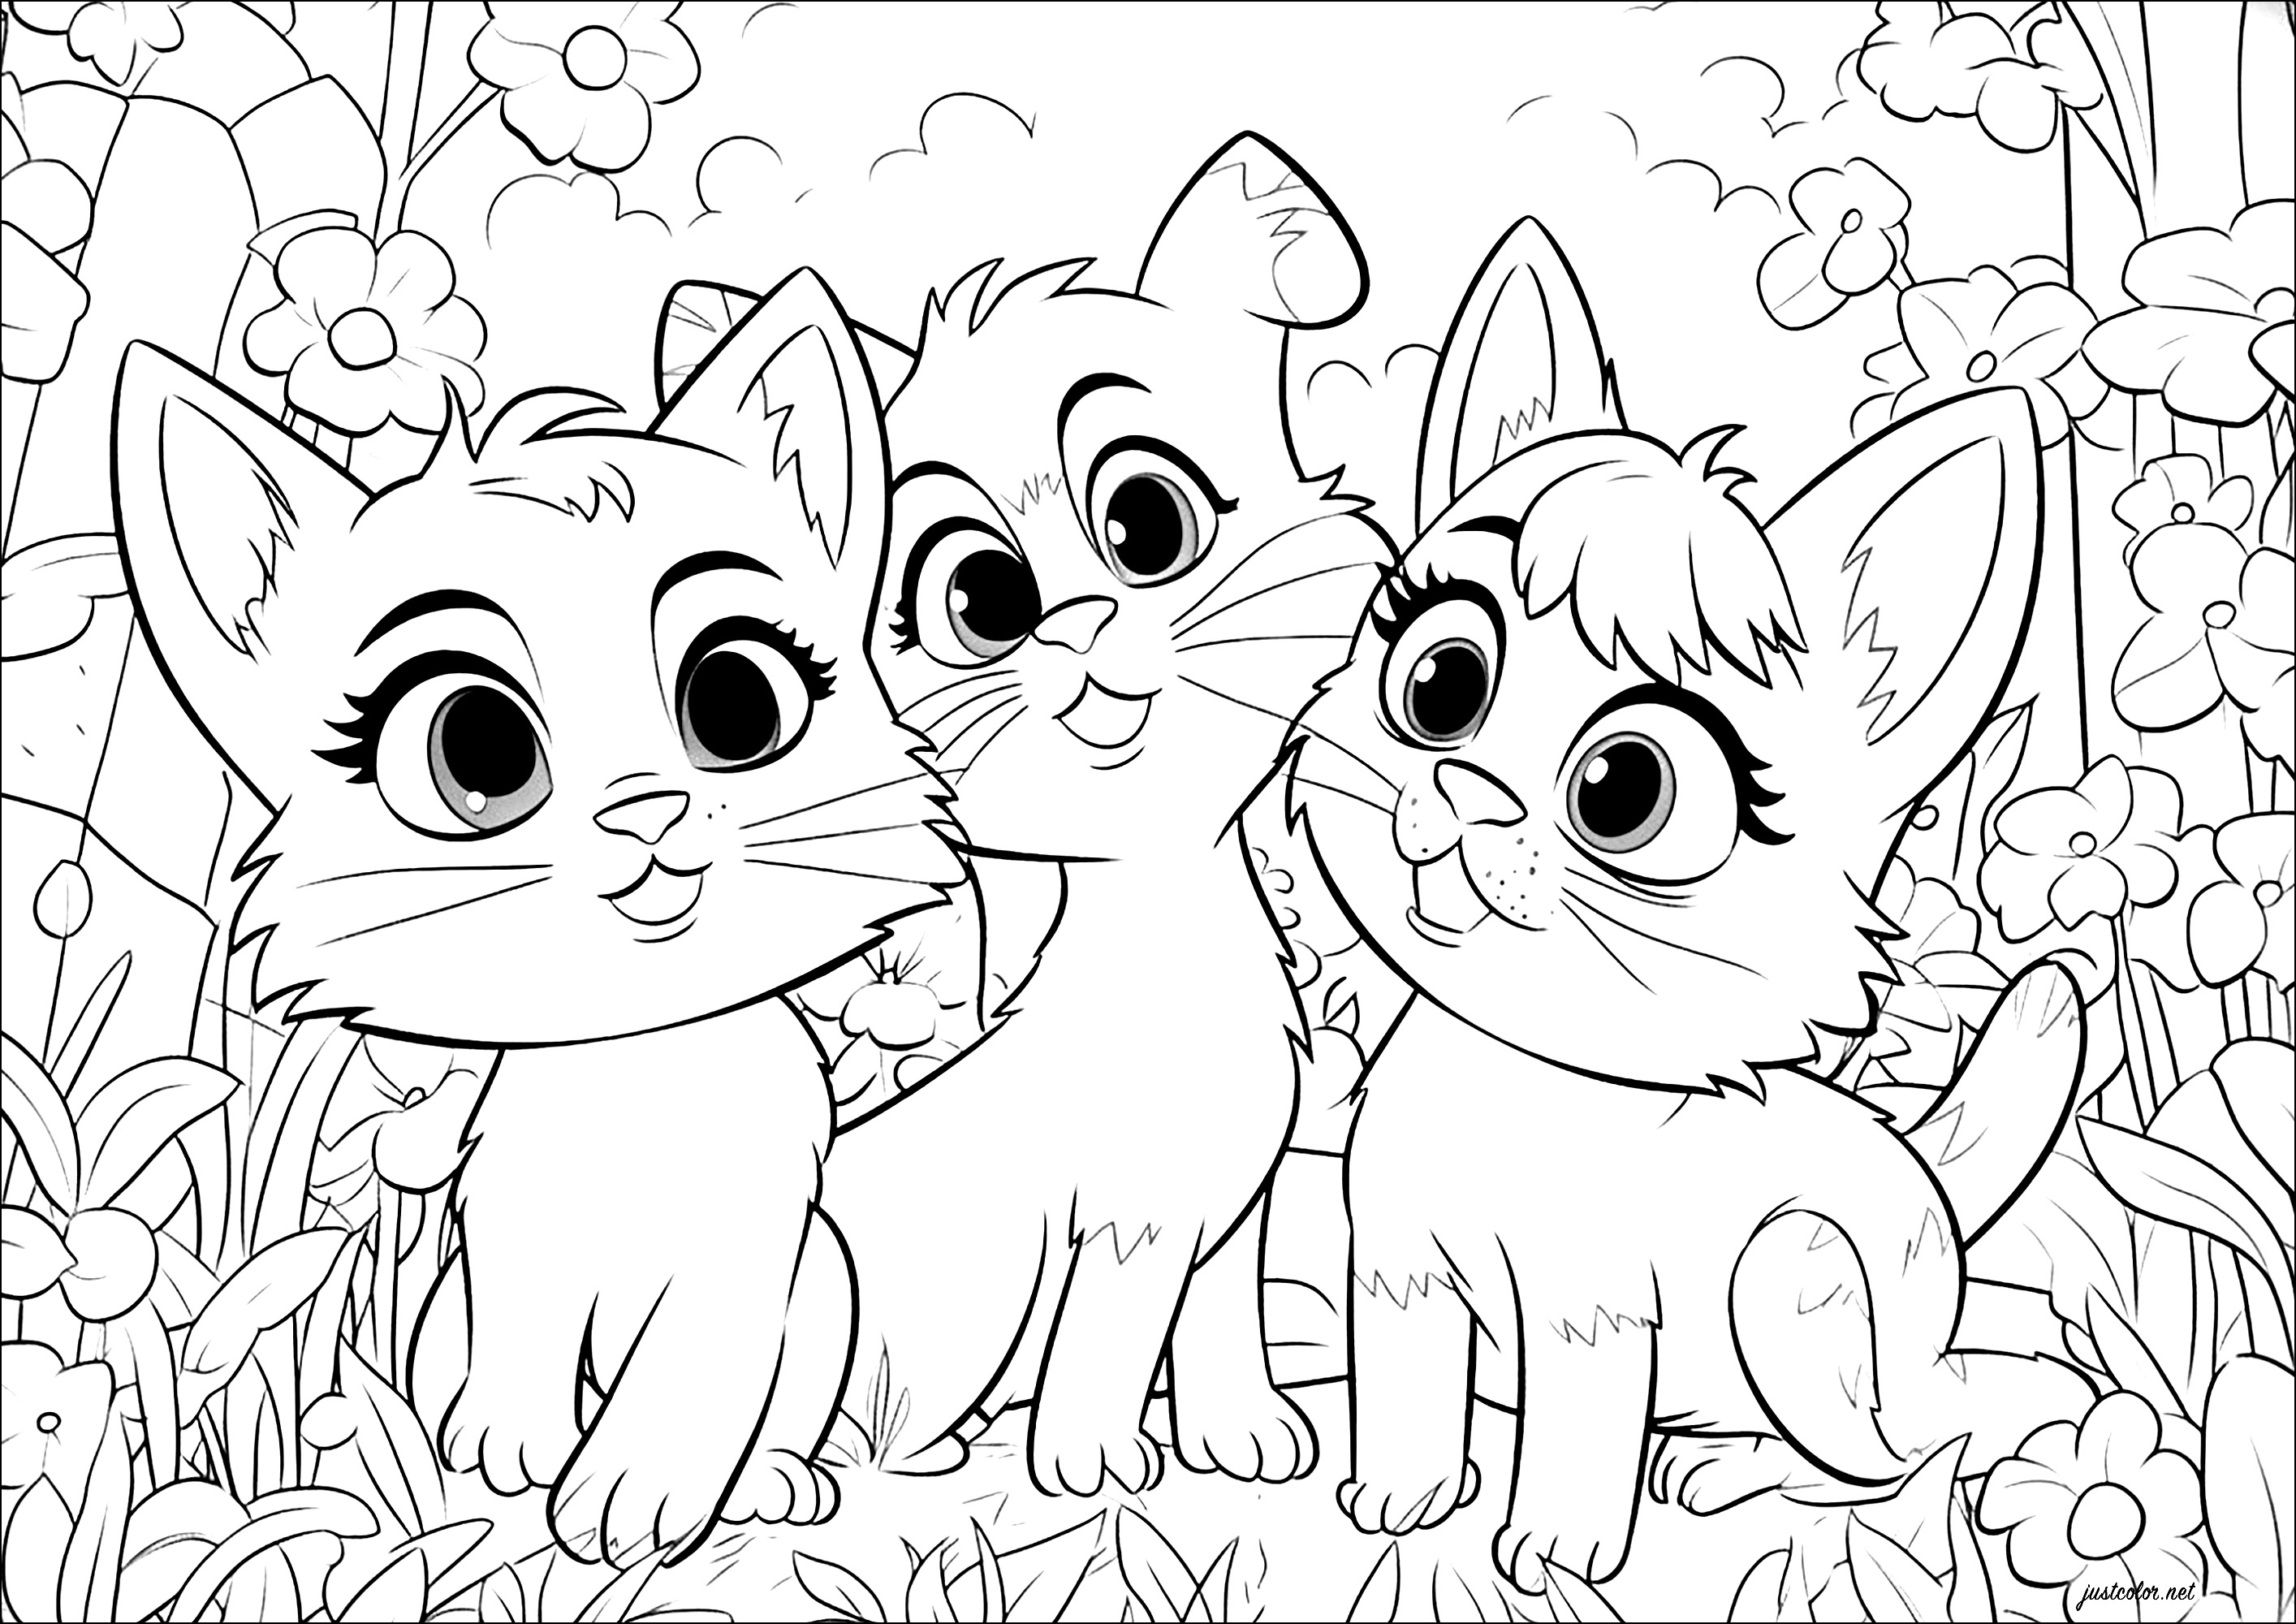 Tres gatos, al estilo Disney - Pixar. Estos tres gatos están dibujados con un estilo que recuerda a las películas de animación de Disney - Pixar.